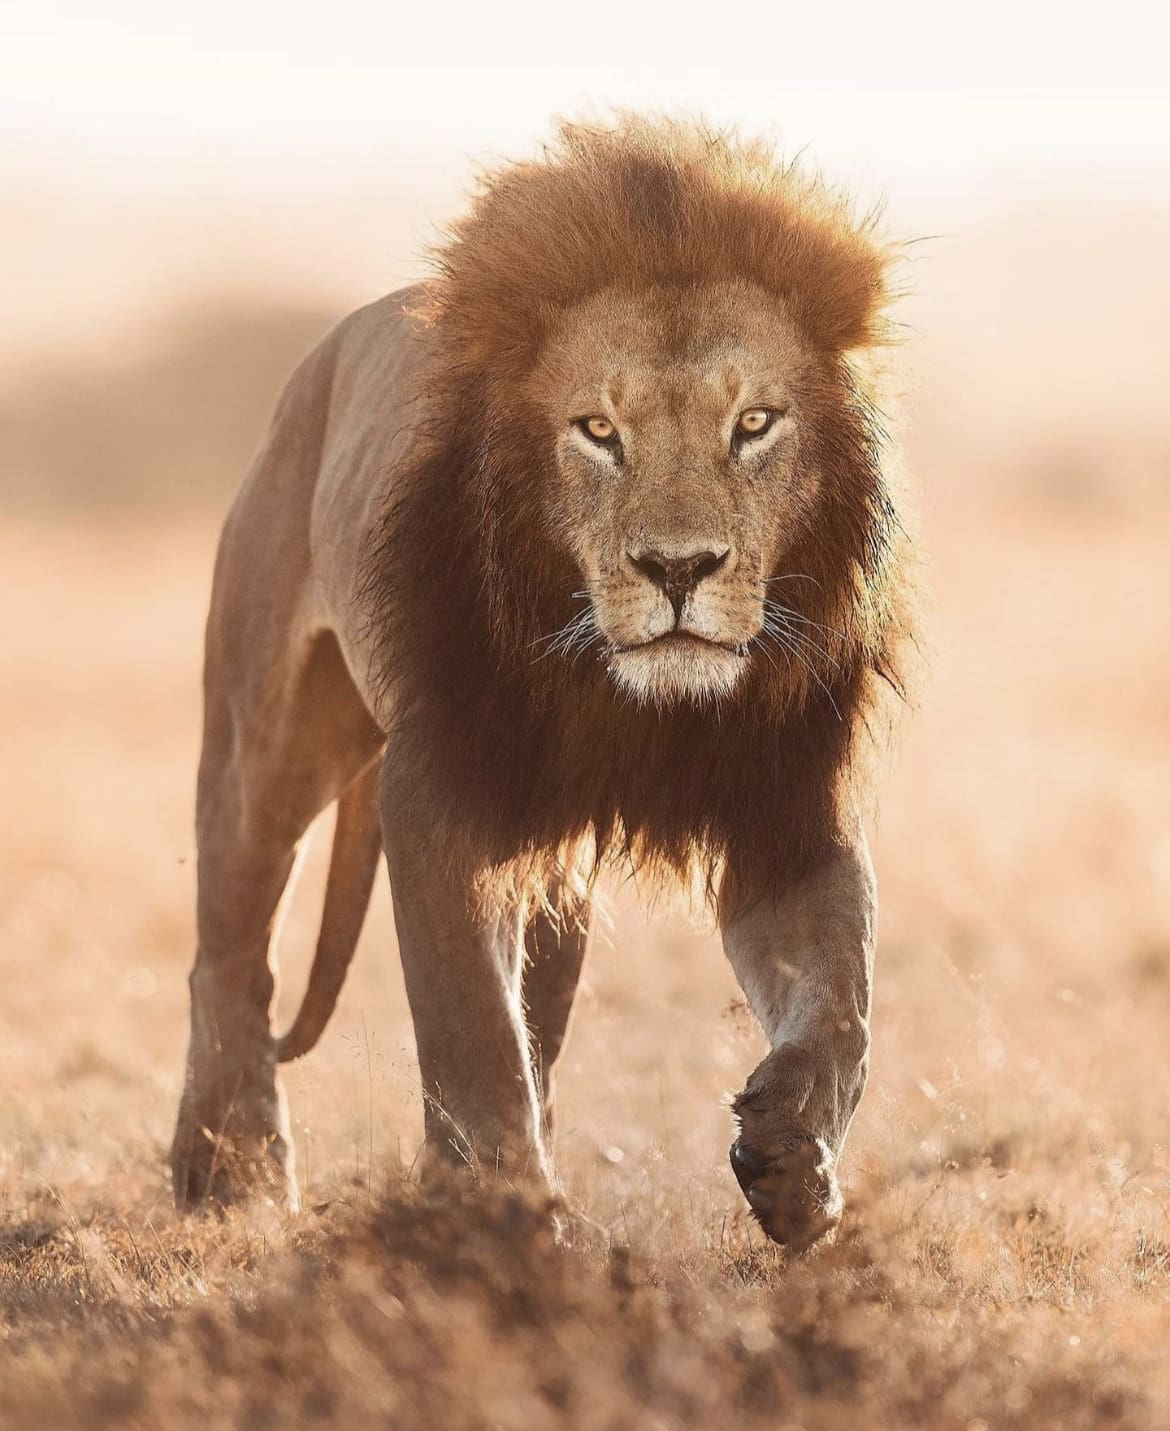 A large male lion walking through the savannah in Masai Mara National Reserve